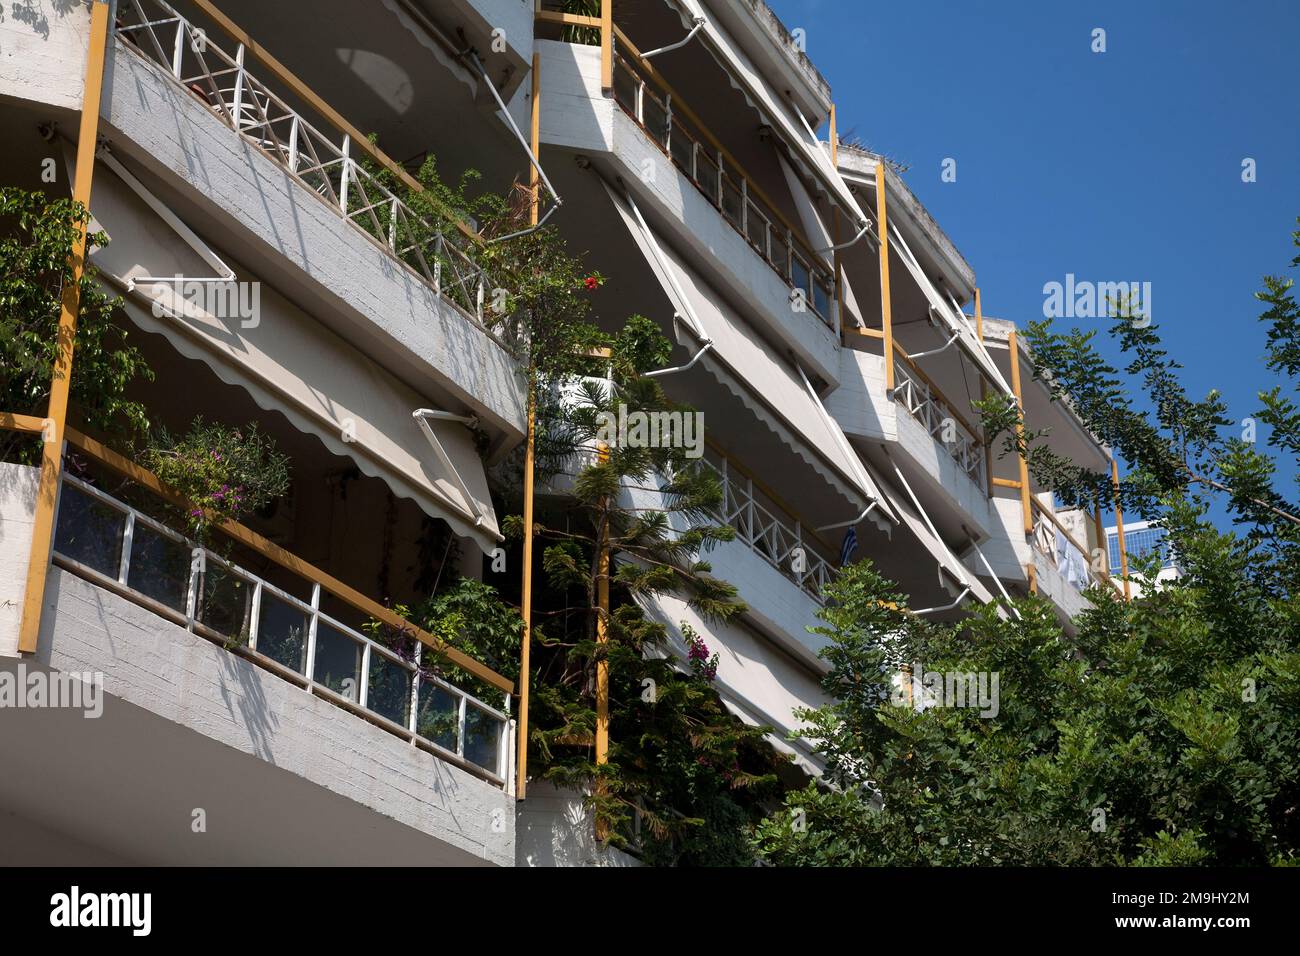 balcons et stores glyfada athènes grèce Banque D'Images